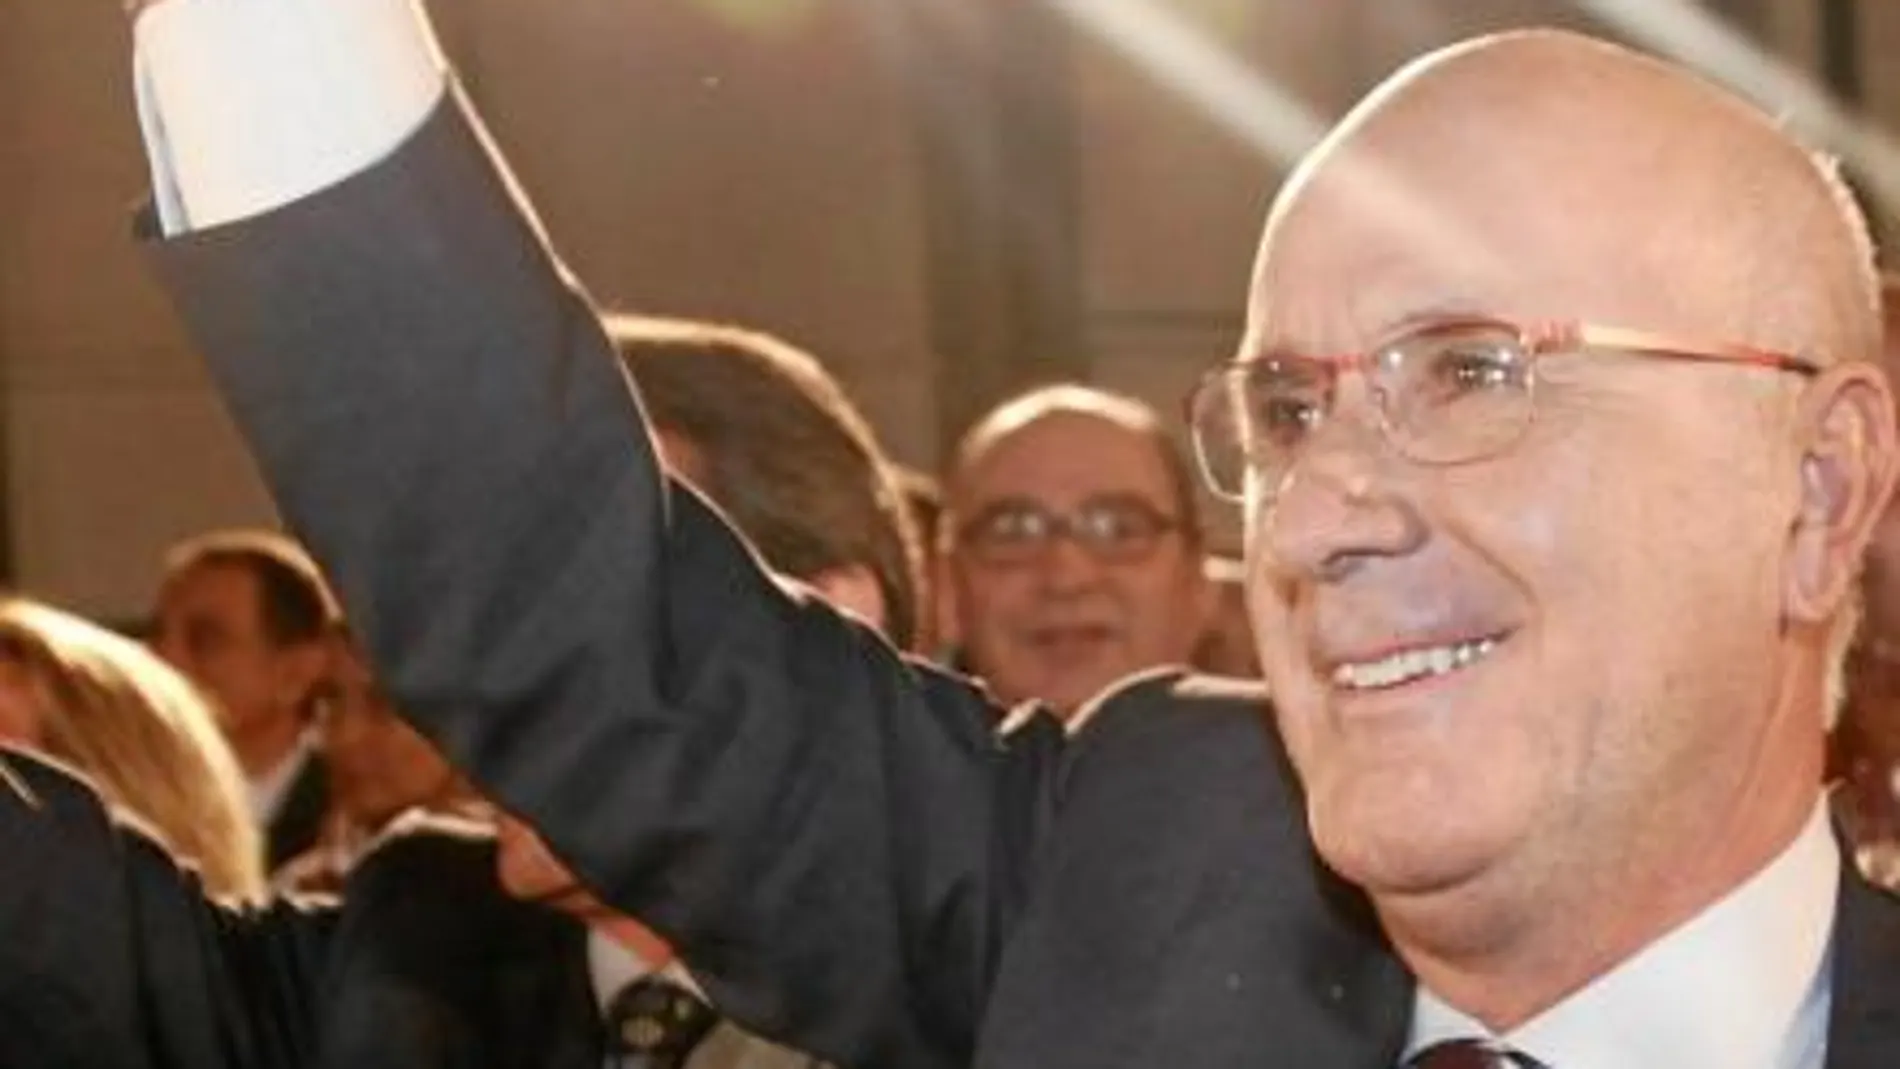 El candidato de CiU, Josep Antoni Duran Lleida, inició la campaña apelando al «centrismo» de CiU